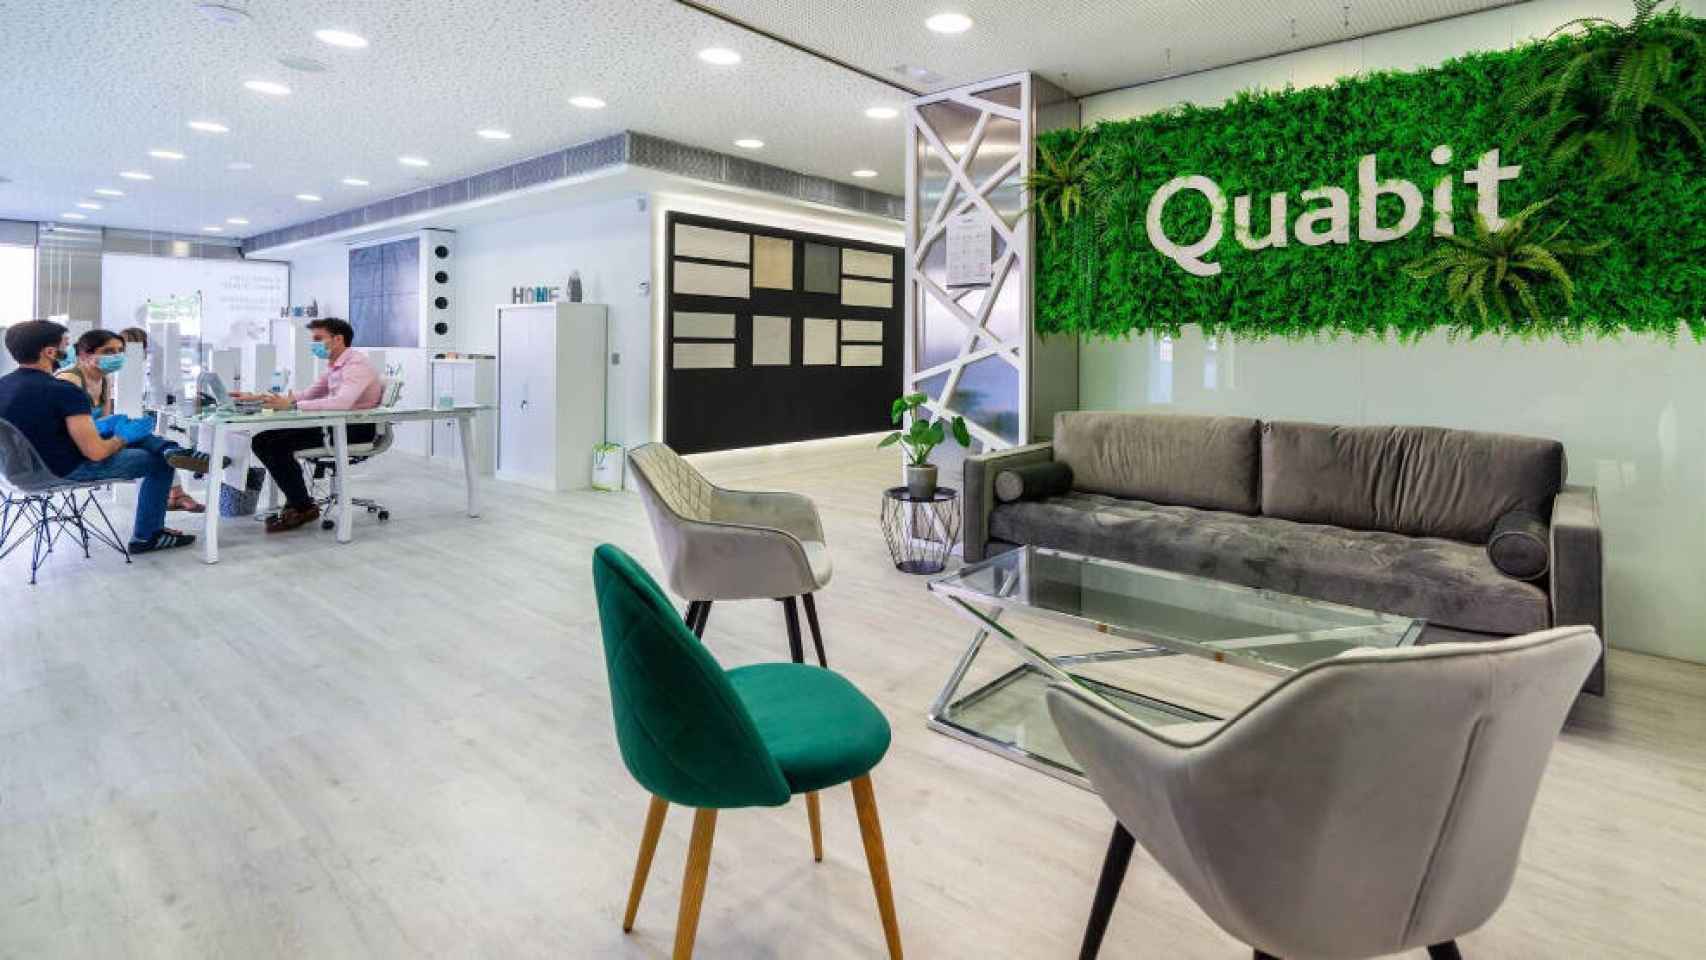 Oficina comercial de Quabit en Guadalajara. Foto: RAFAEL MARTIN SOLANO (QUABIT)